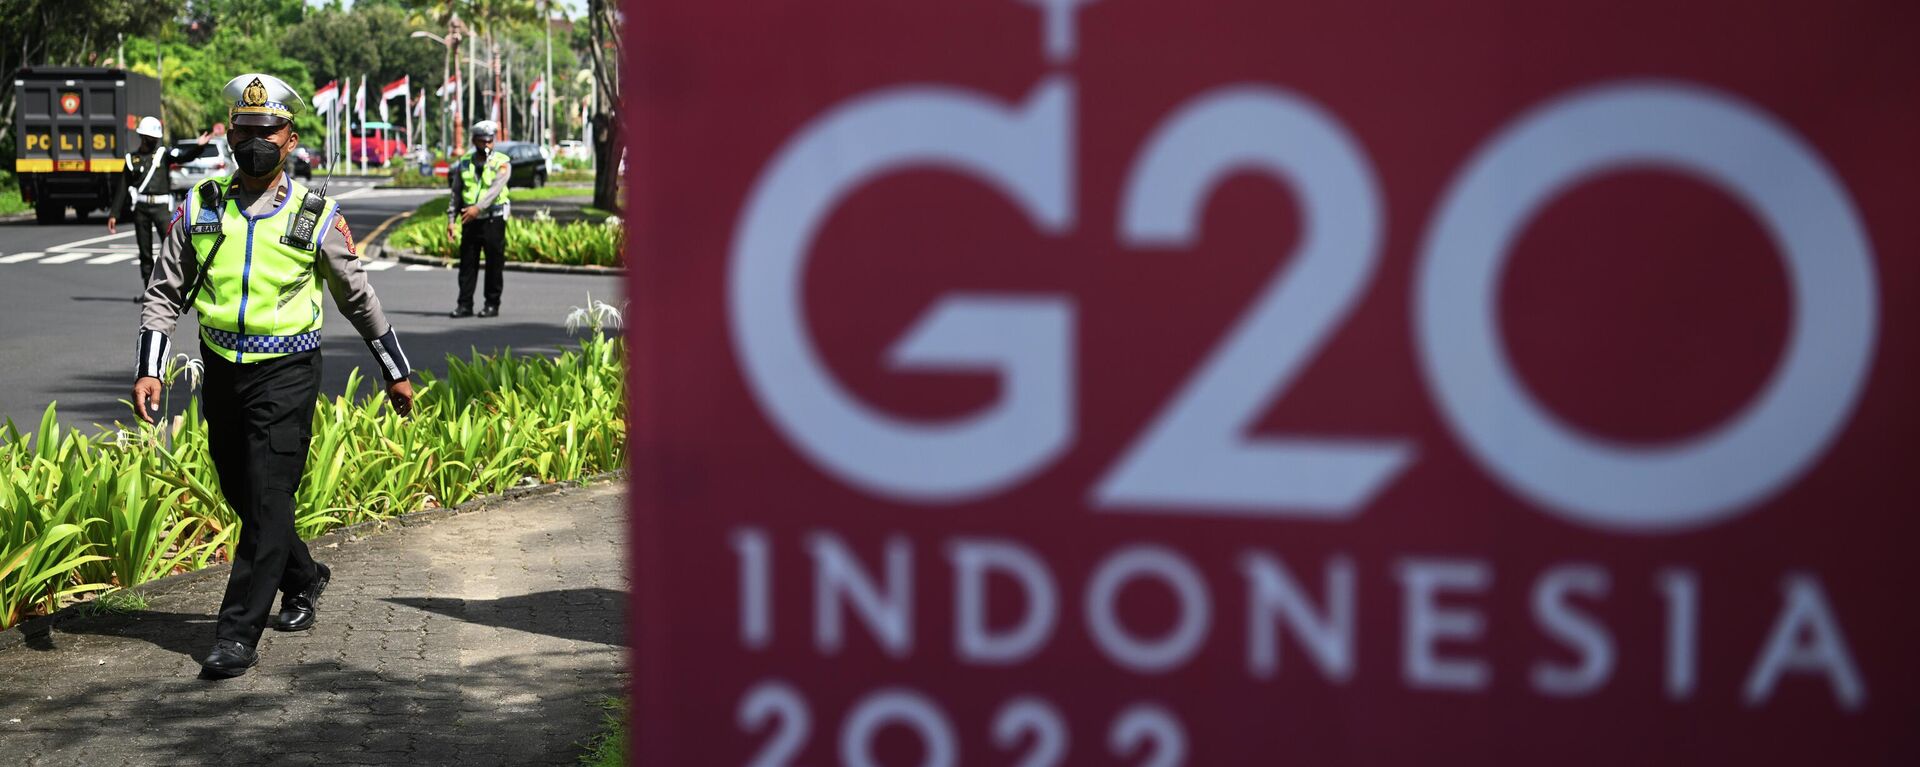 Балидеги G-20 саммитине даярдыктар - Sputnik Кыргызстан, 1920, 14.11.2022